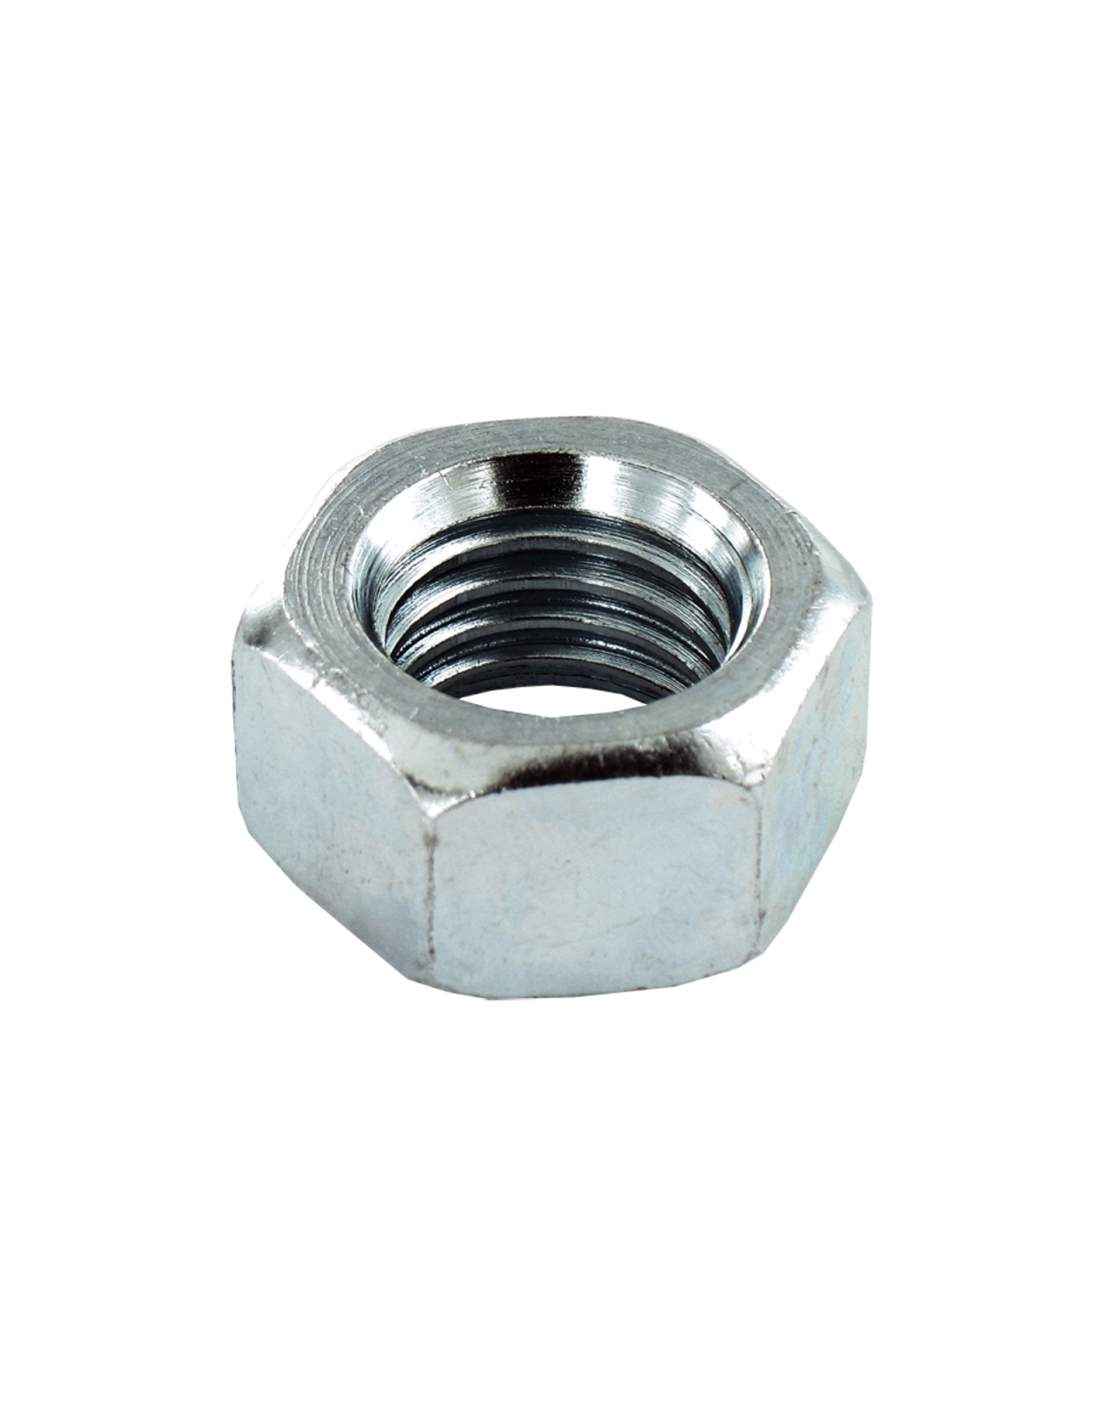 Hexagon nut in zinc-plated steel, diameter 8mm, 12 pcs.